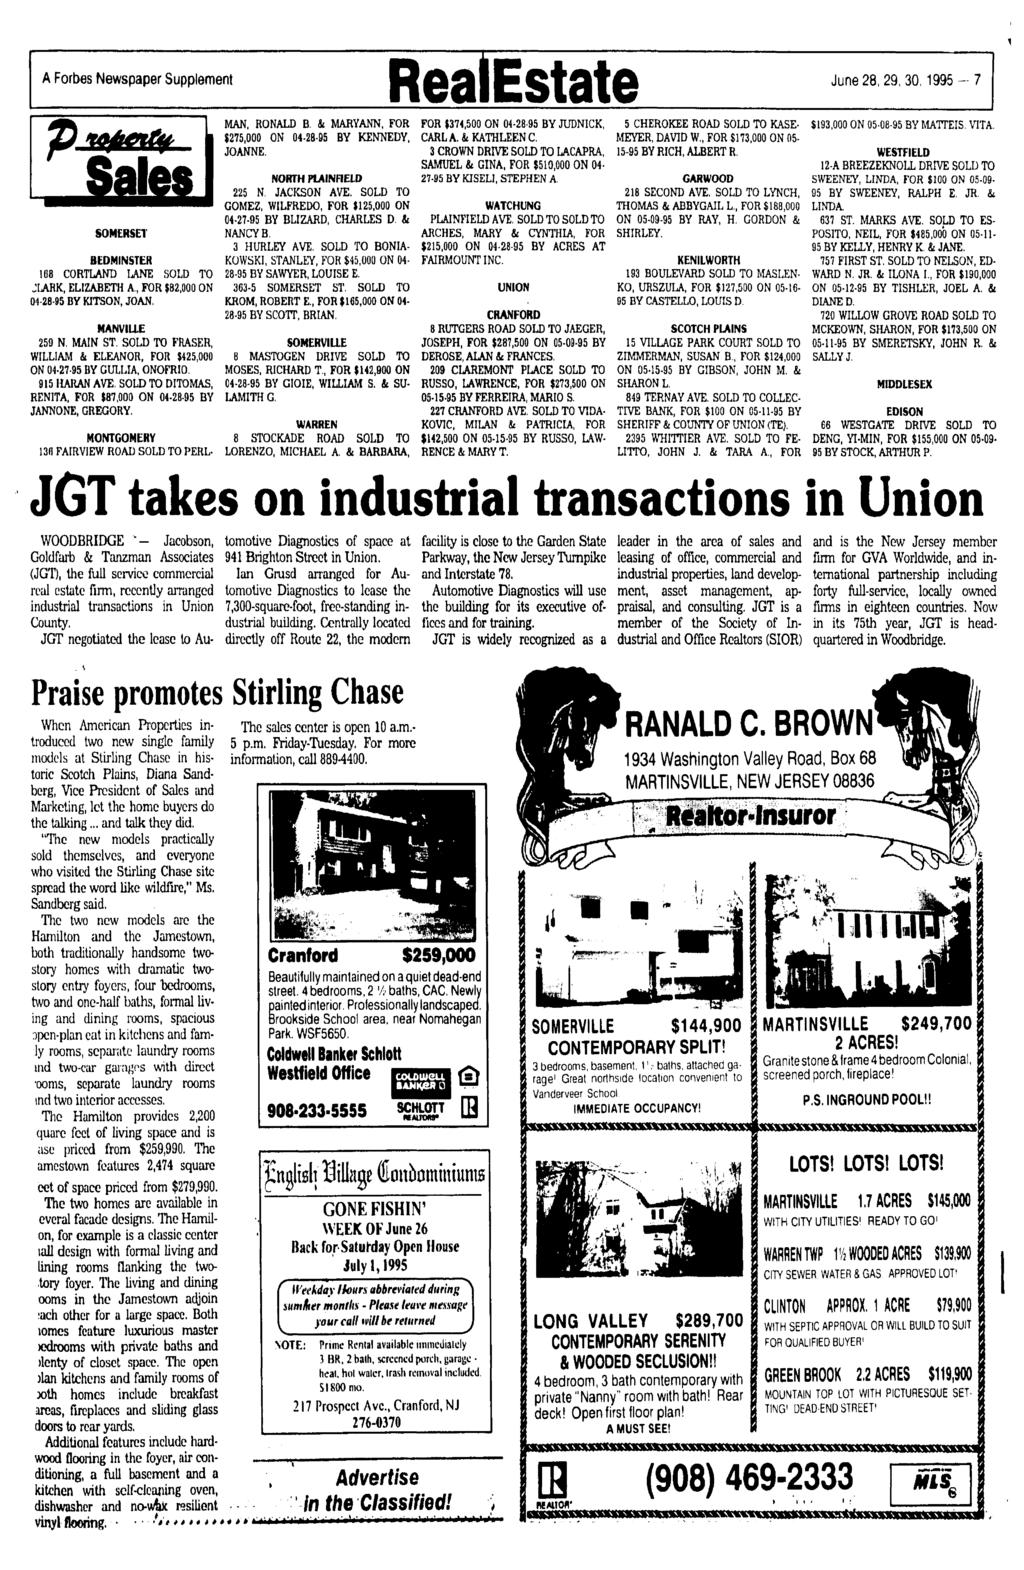 A Forbes Newspaper Supplement Real Estate June 28,29, 30,1995-7 Sales SOMERSET BEDMNSTER 108 CORTLAND LANE SOLD TO JLARK, ELZABETH A,, FOR $82,000 ON 04-28-95 BY KTSON, JOAN. MANVUE 259 N, MAN ST.